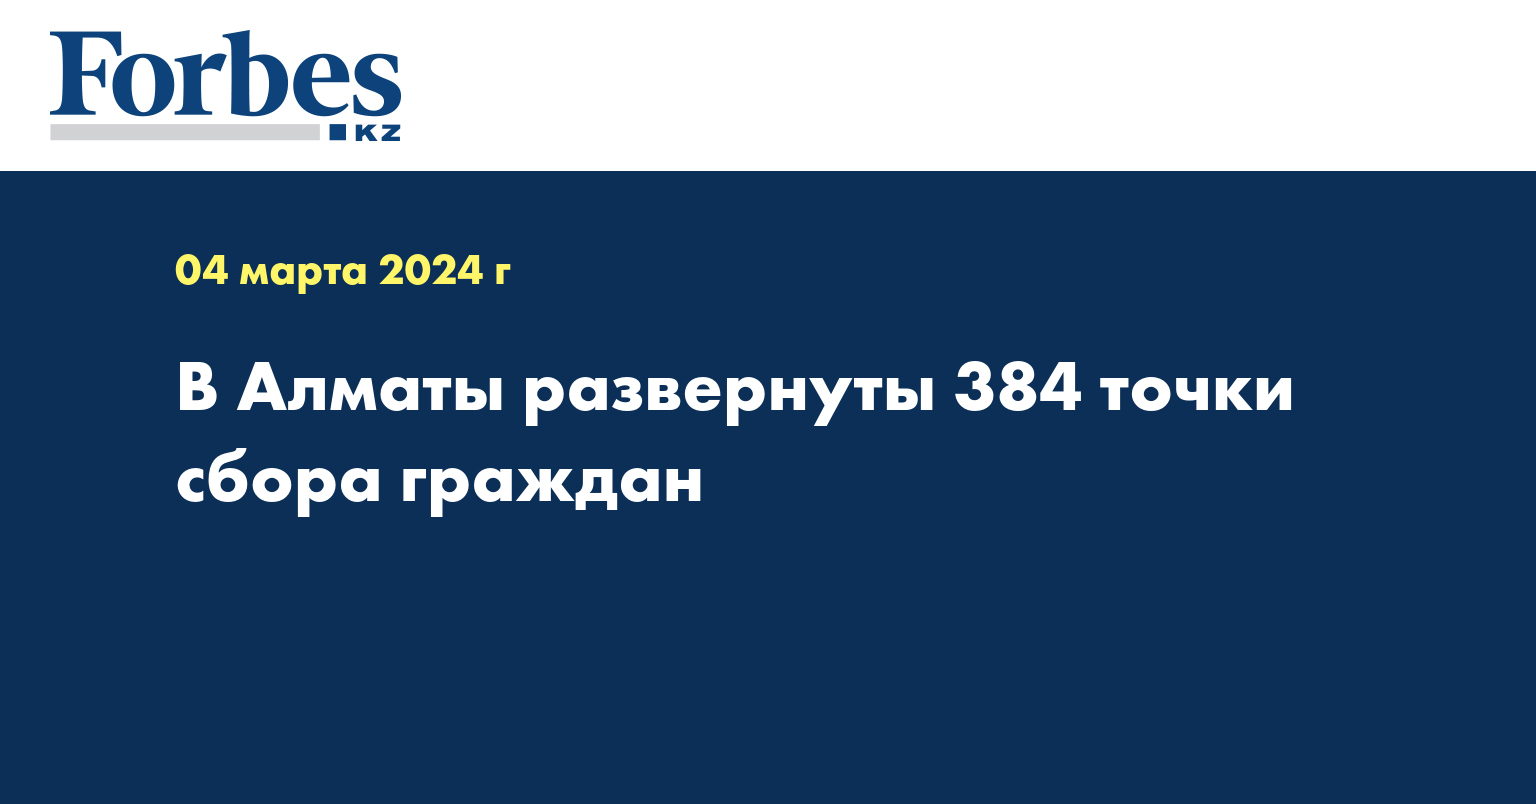 В Алматы развернуты 384 точки сбора граждан